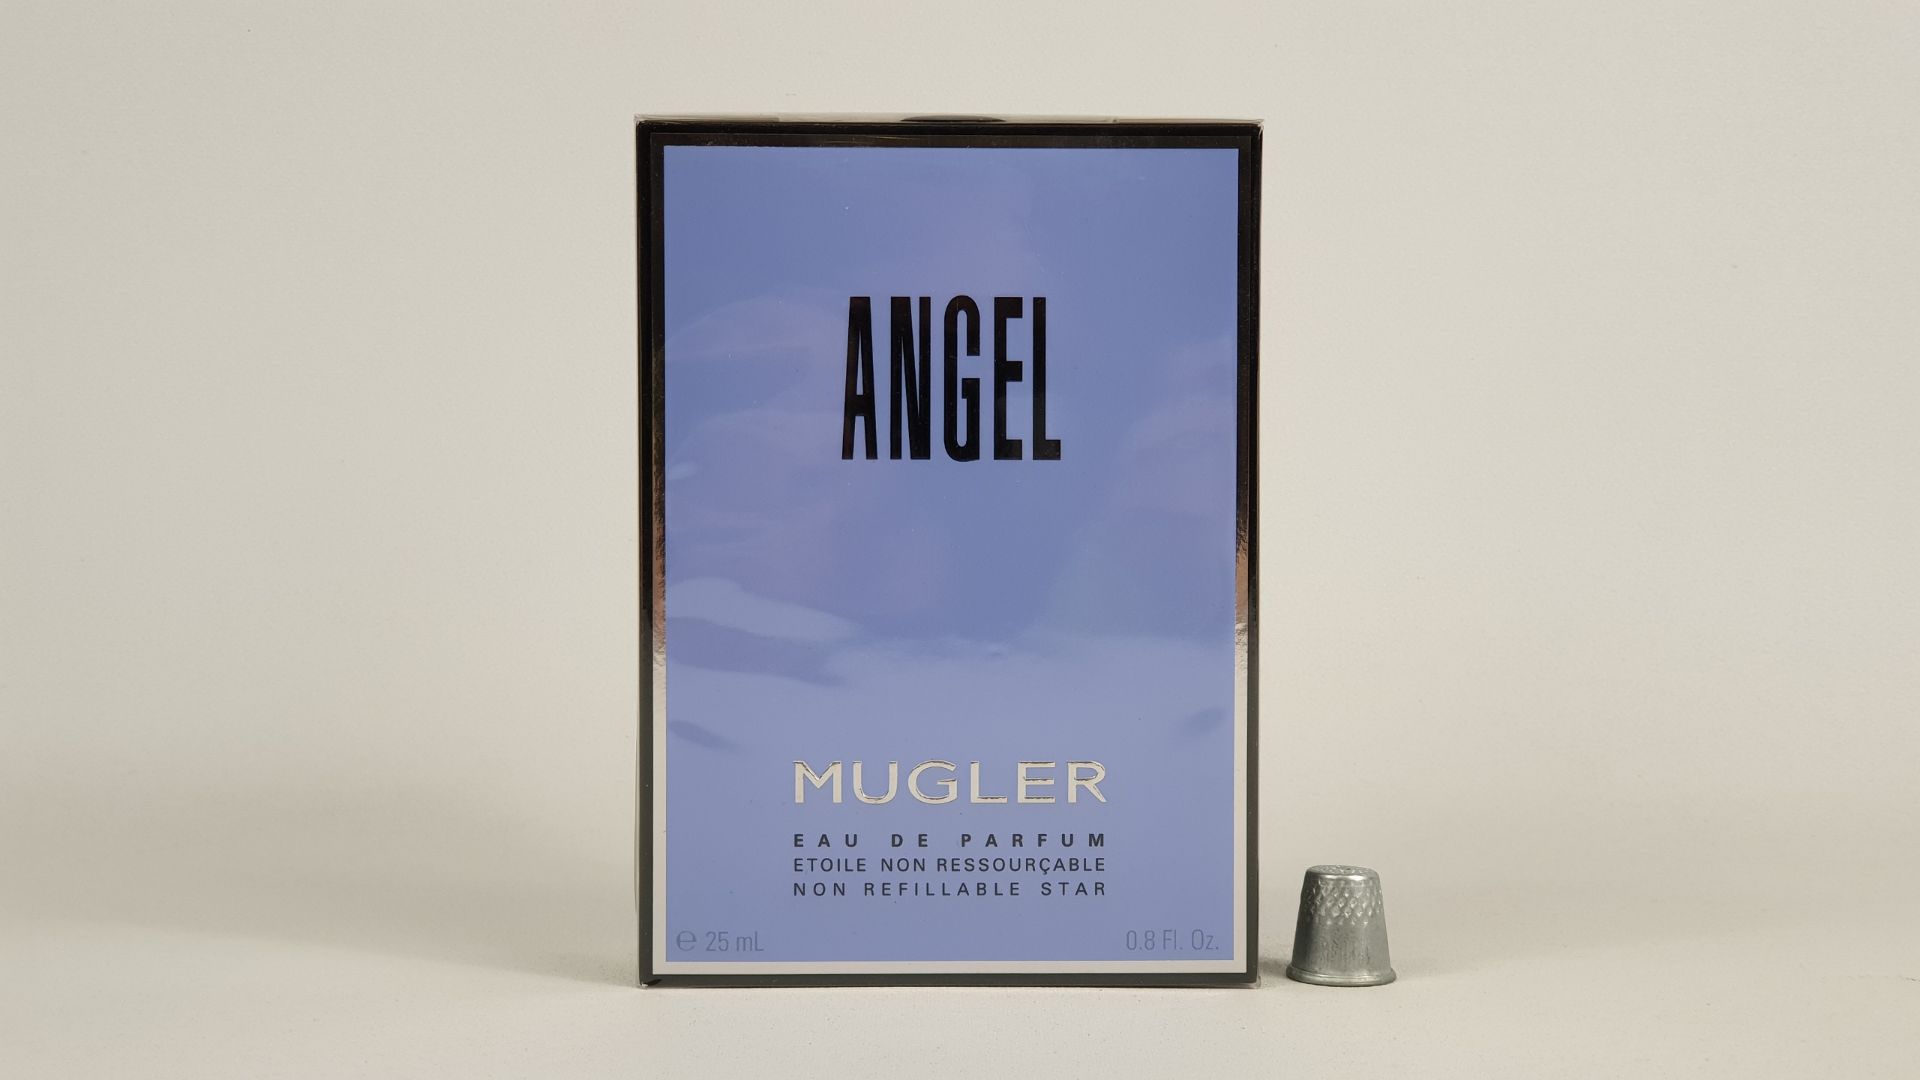 5 X 25 ML MUGLER ANGEL EAU DE PARFUM